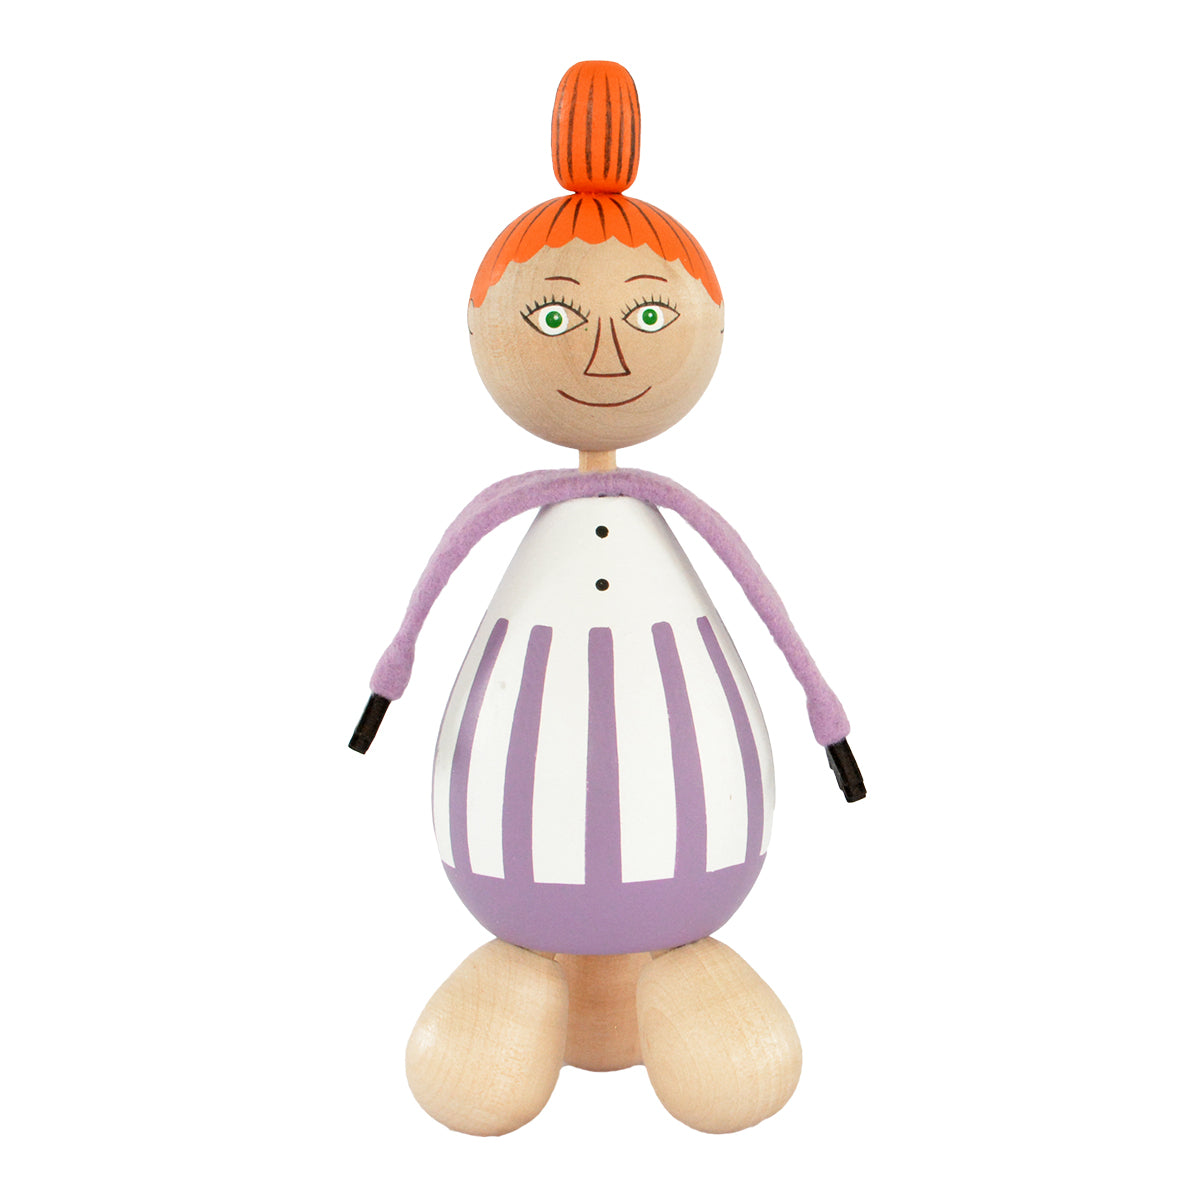 Moomin ムーミン Puulelut プーレルット 木製手描き人形 つぼ押し ( ミムラ )